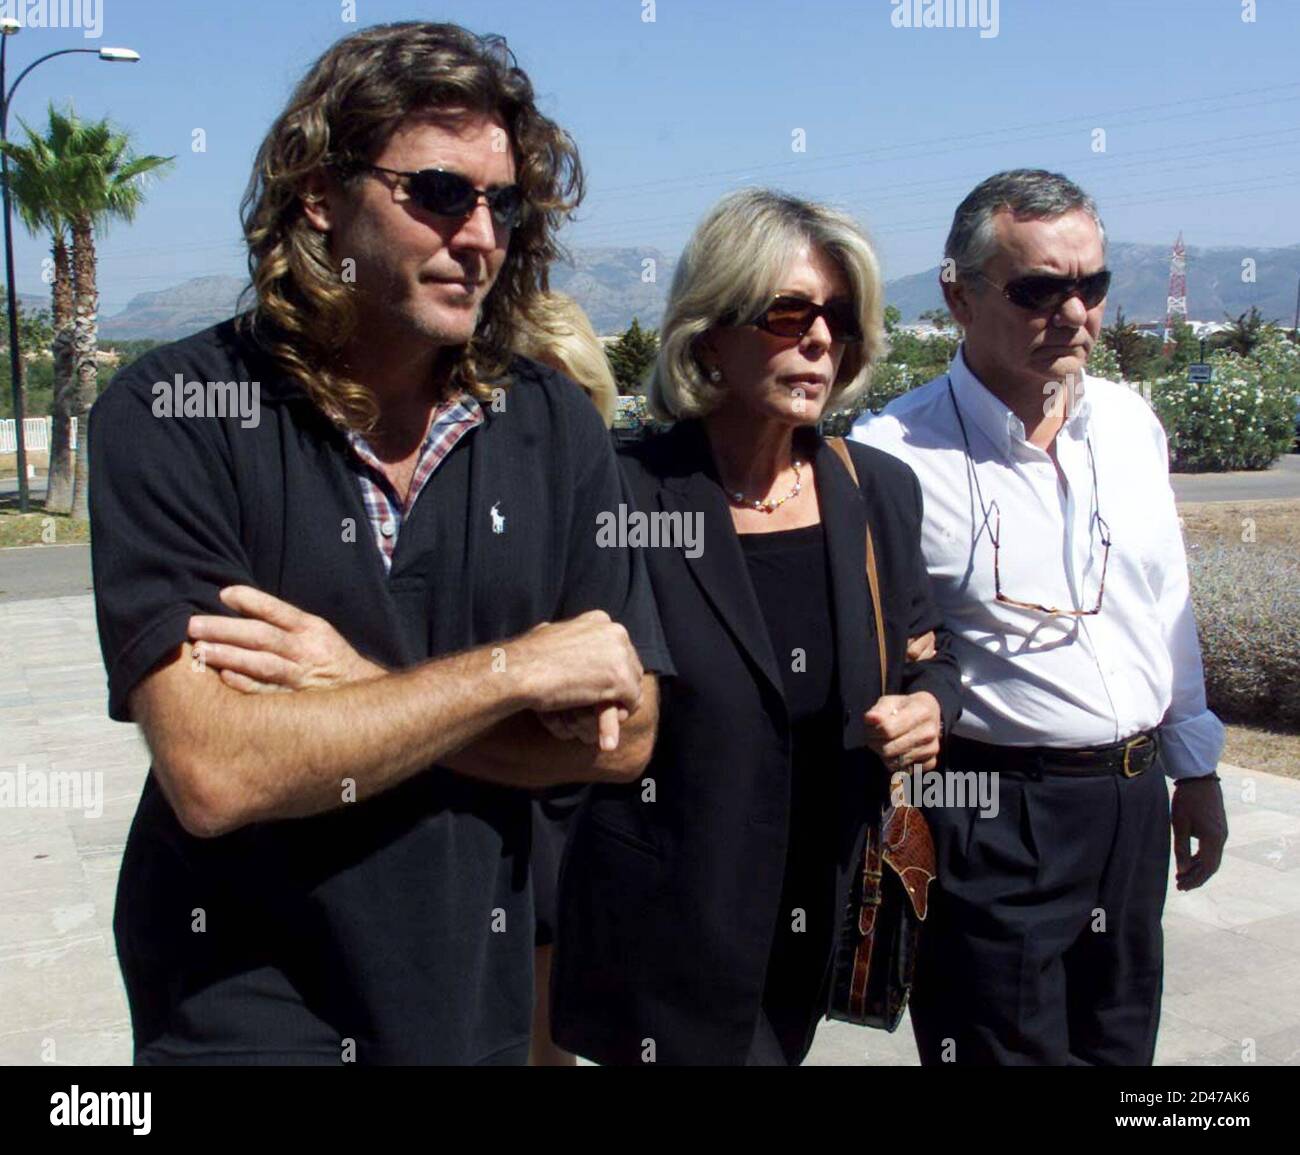 La esposa de Christopher Skase, el fugitivo más querido de Australia, Pixie  Skase (C), llega a la ceremonia de incineración junto con su hijo Tony  Larkins (L) y el abogado familiar Toni